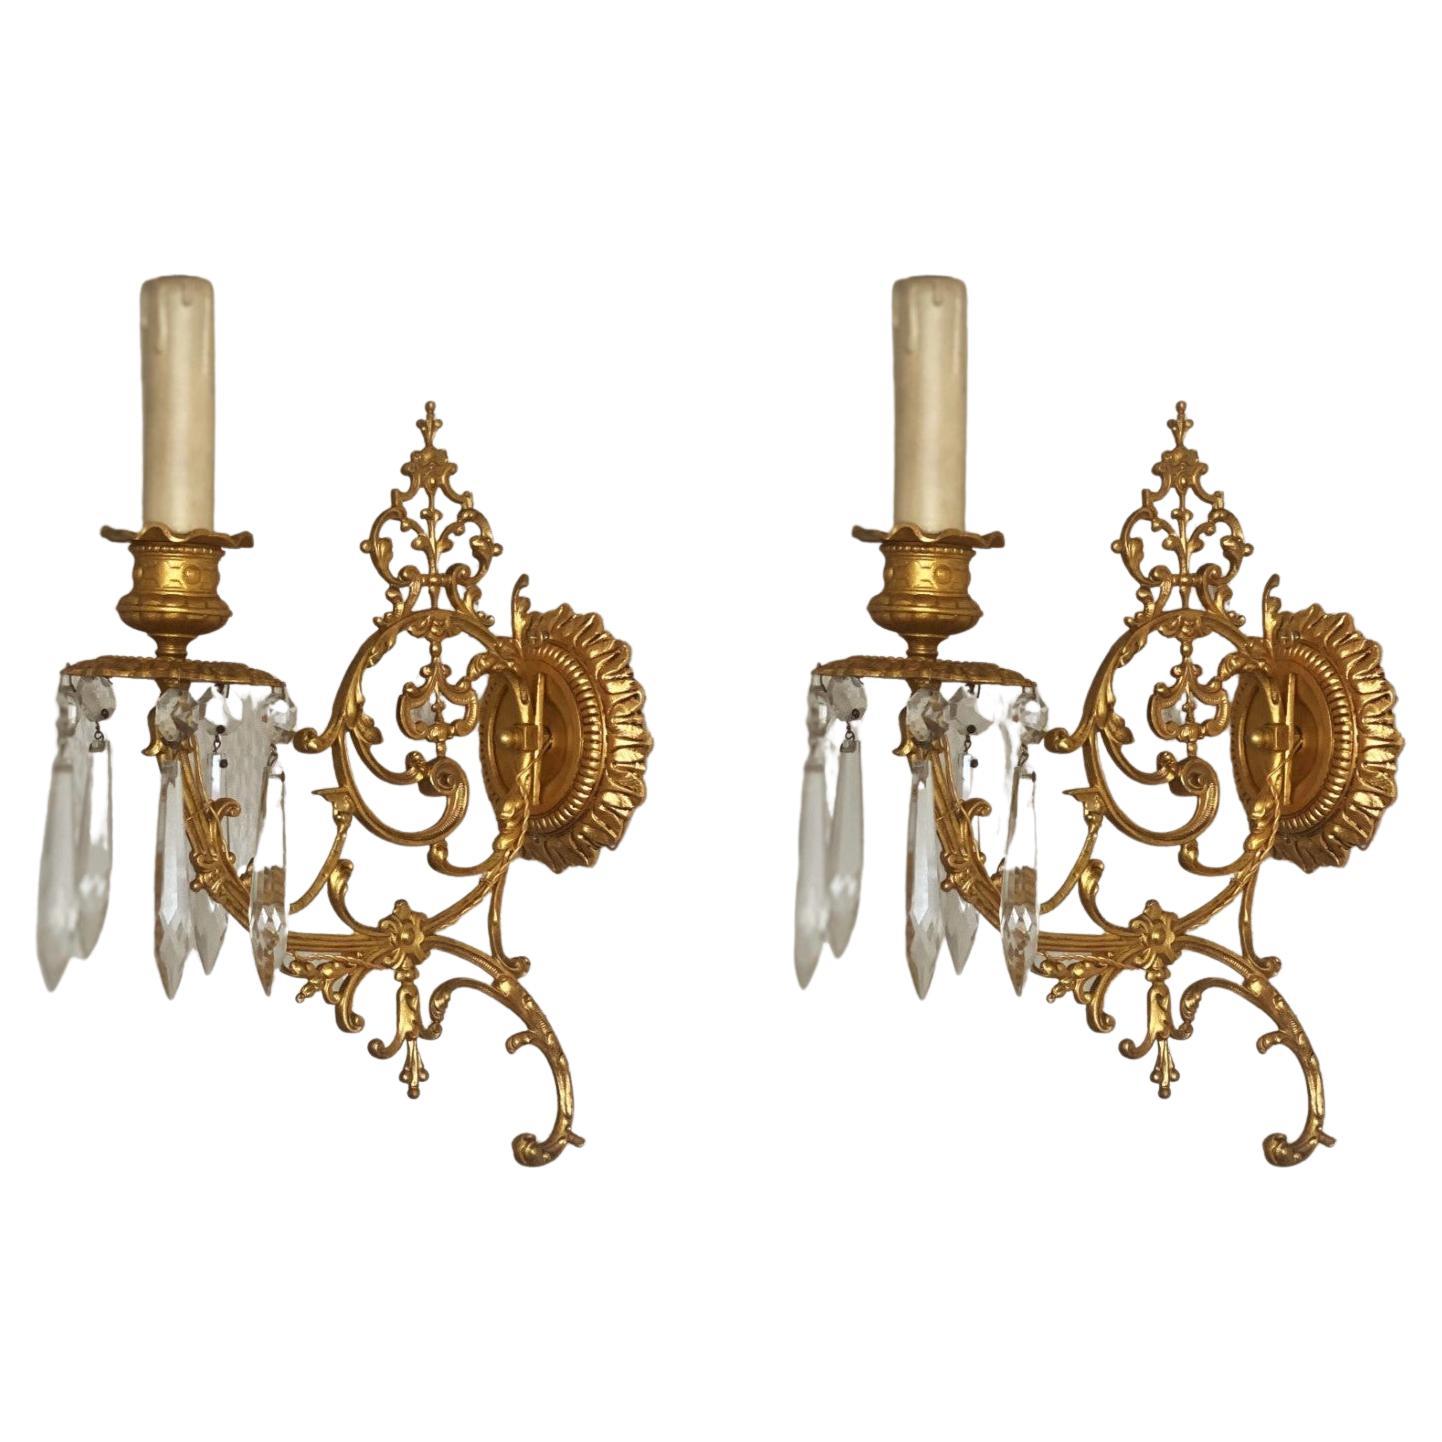 Un ensemble extrêmement élégant et de haute qualité de quatre chandeliers muraux en bronze doré (bronze doré au feu) d'époque Louis XVI, merveilleusement élaborés dans des détails fins et précis, décorés de longs prismes de cristal en forme de